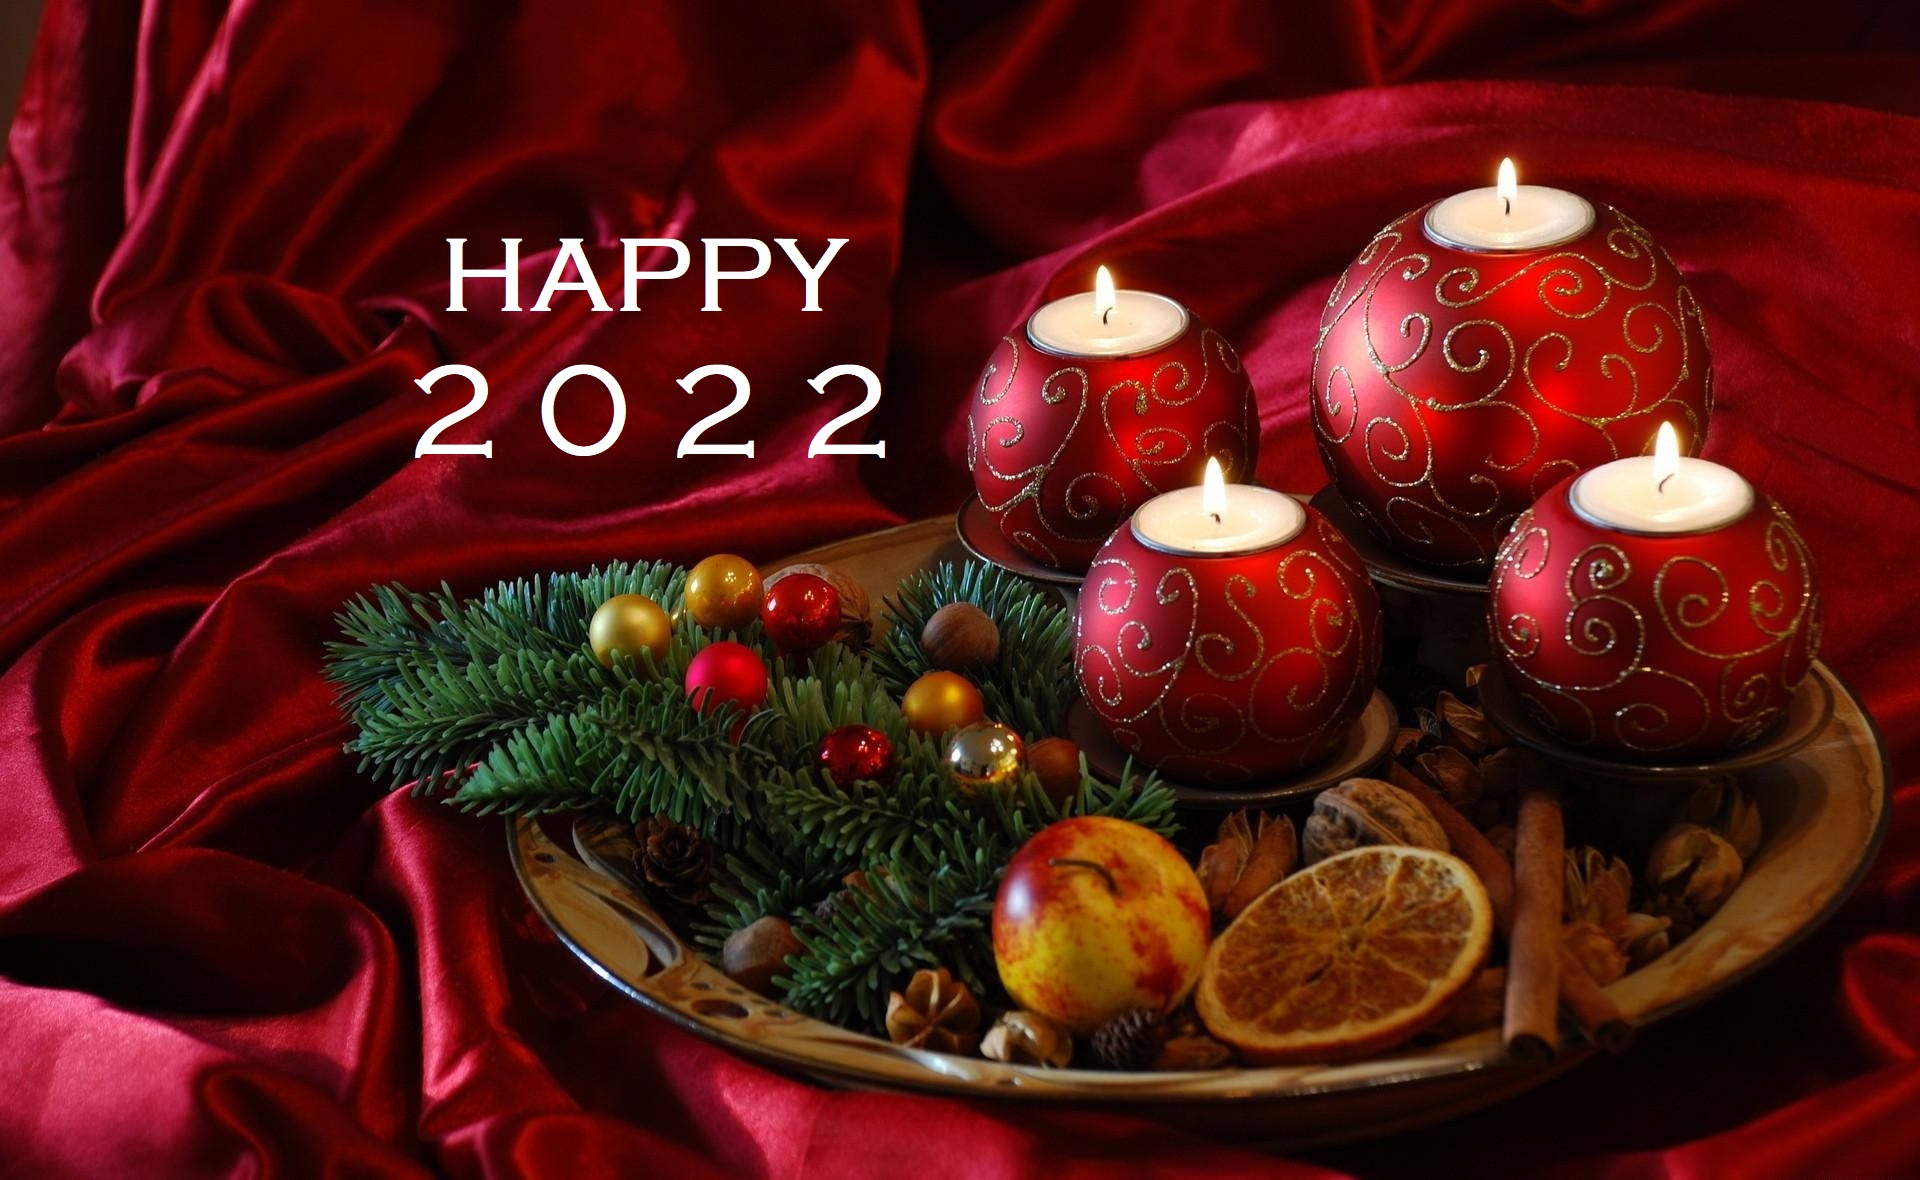 hinh nen happy new year 2022